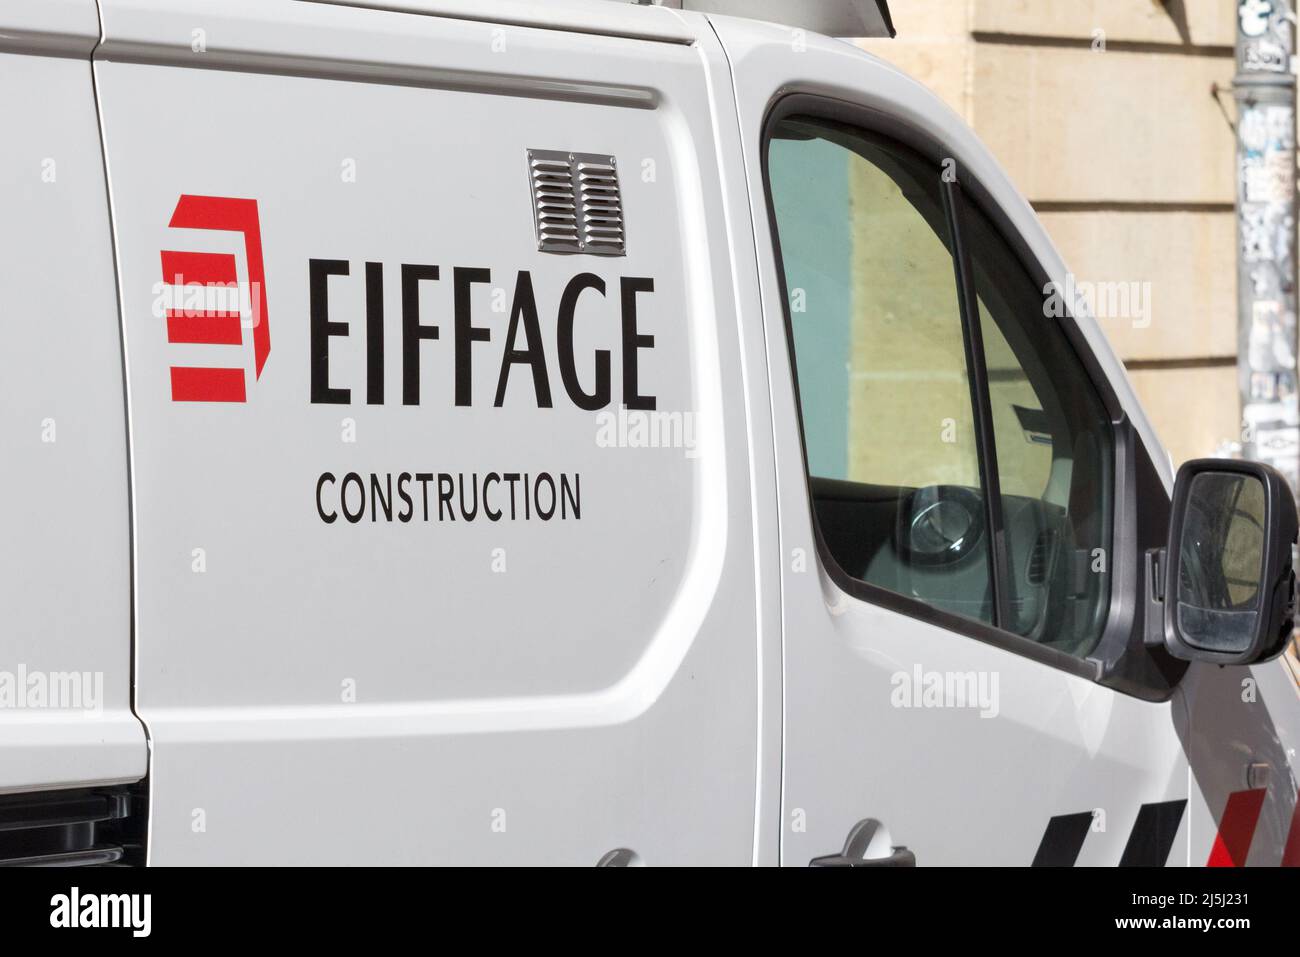 Photo d'un panneau avec le logo d'Eiffage pris sur un de leurs véhicules à Bordeaux, France. Eiffage S.A. est une construction de génie civil française Banque D'Images